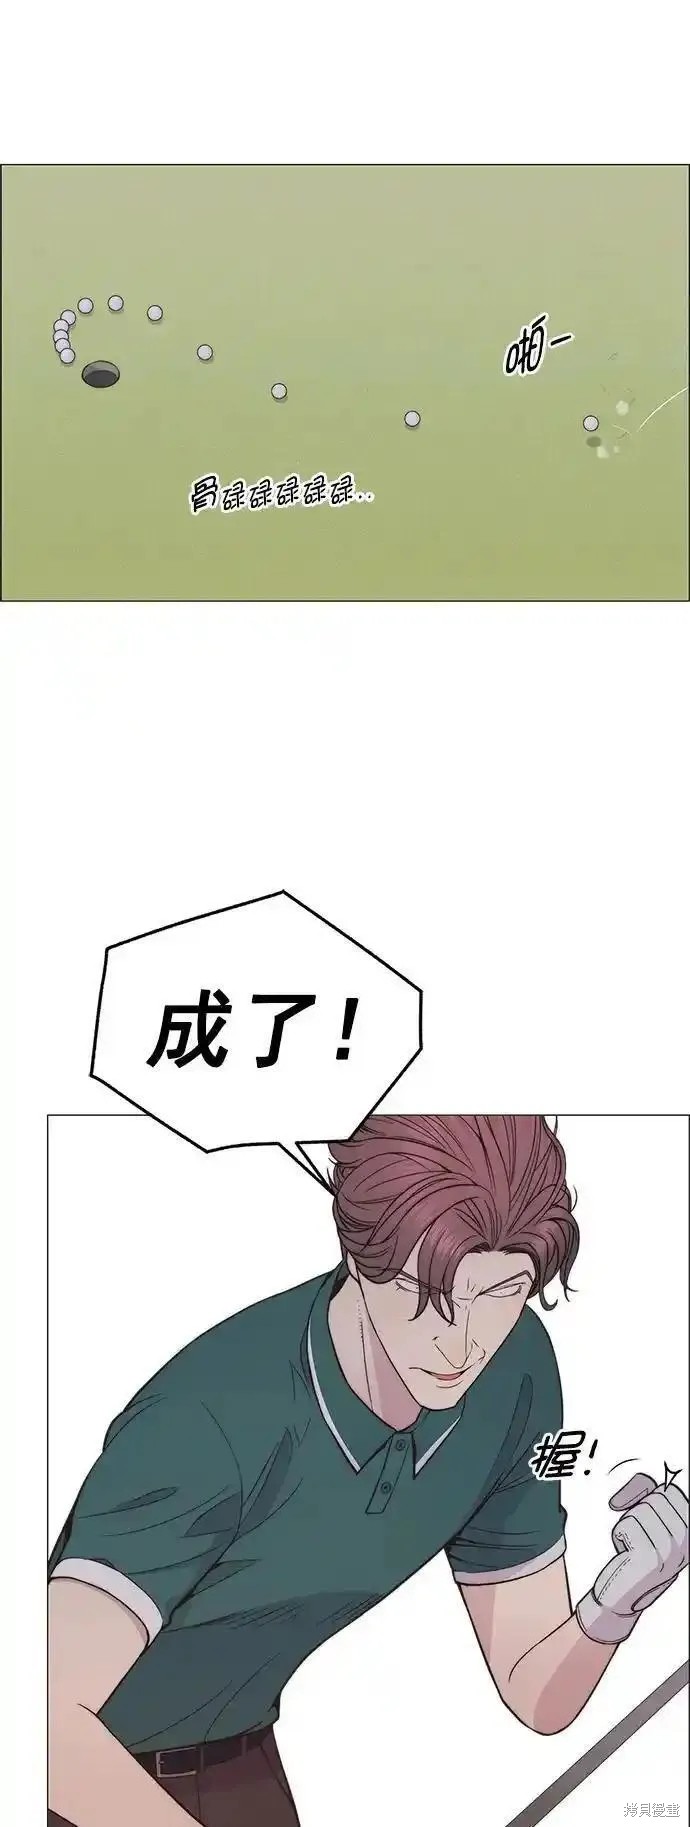 男子汉漫画,第175话2图